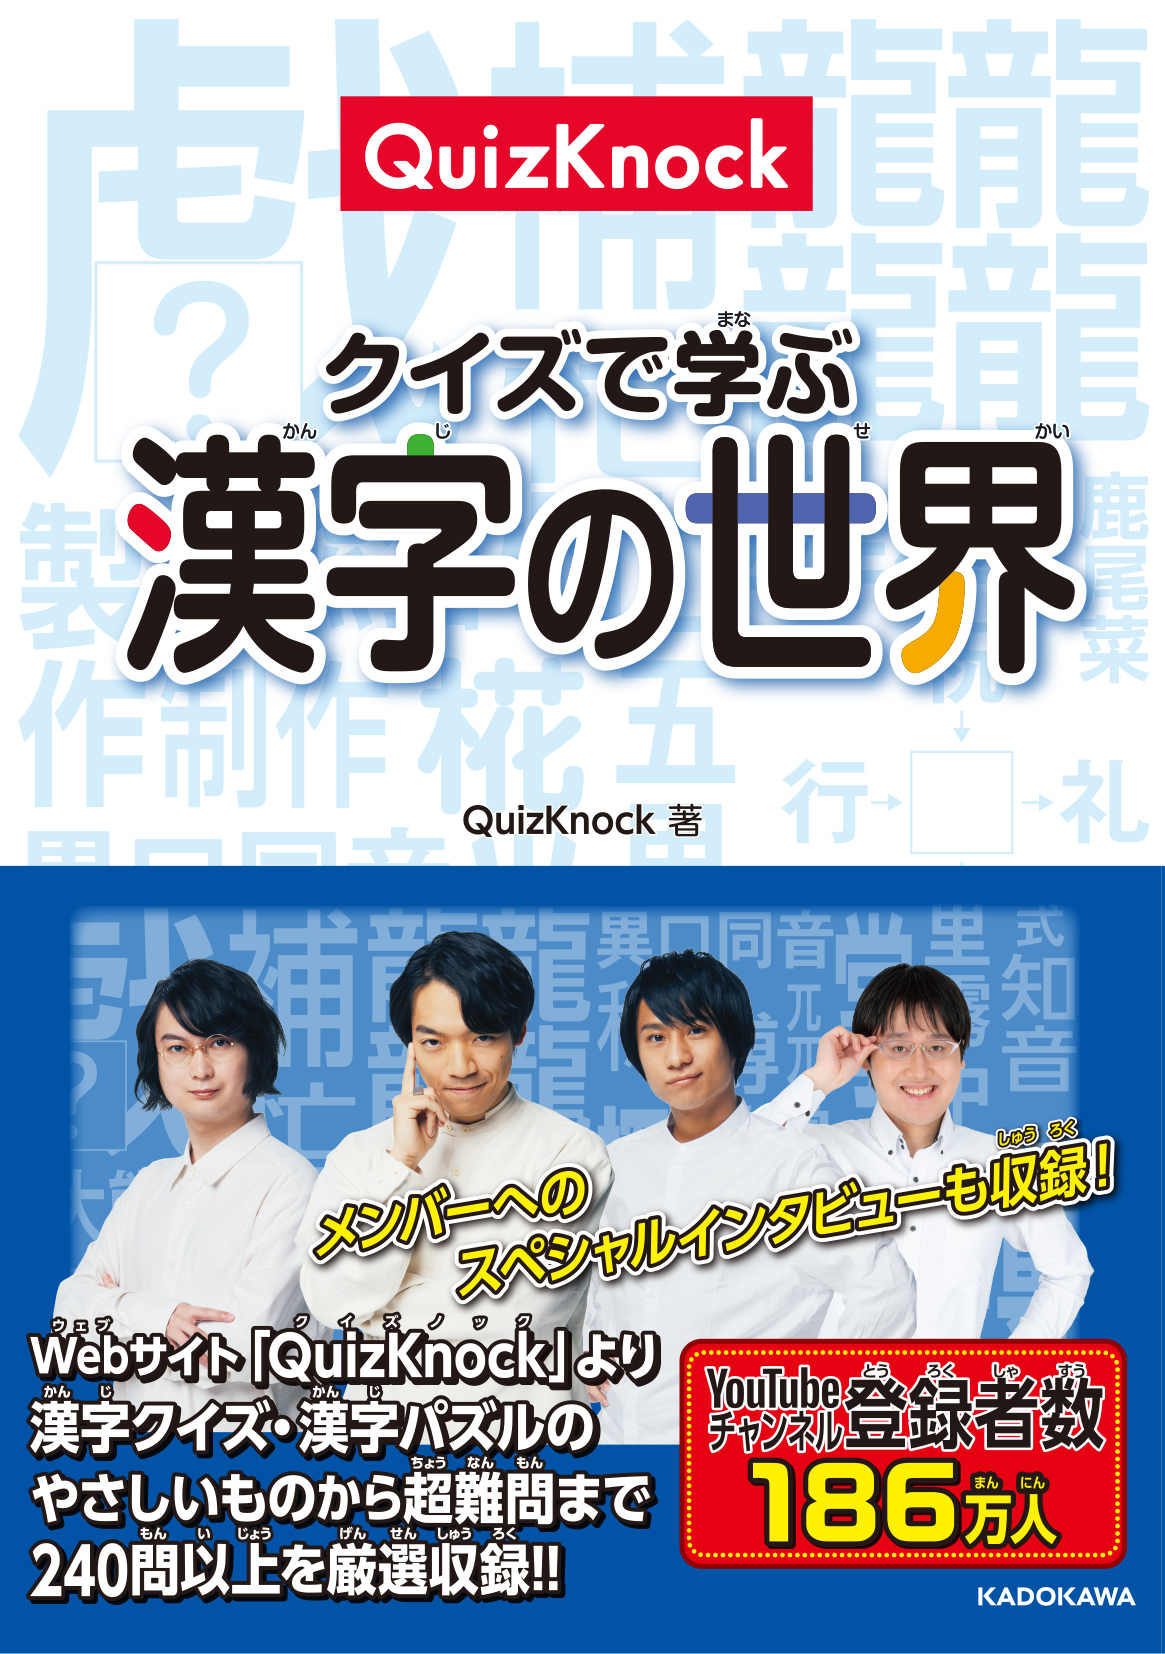 東大卒クイズ王・伊沢拓司が率いる知識集団「QuizKnock」の最新クイズ